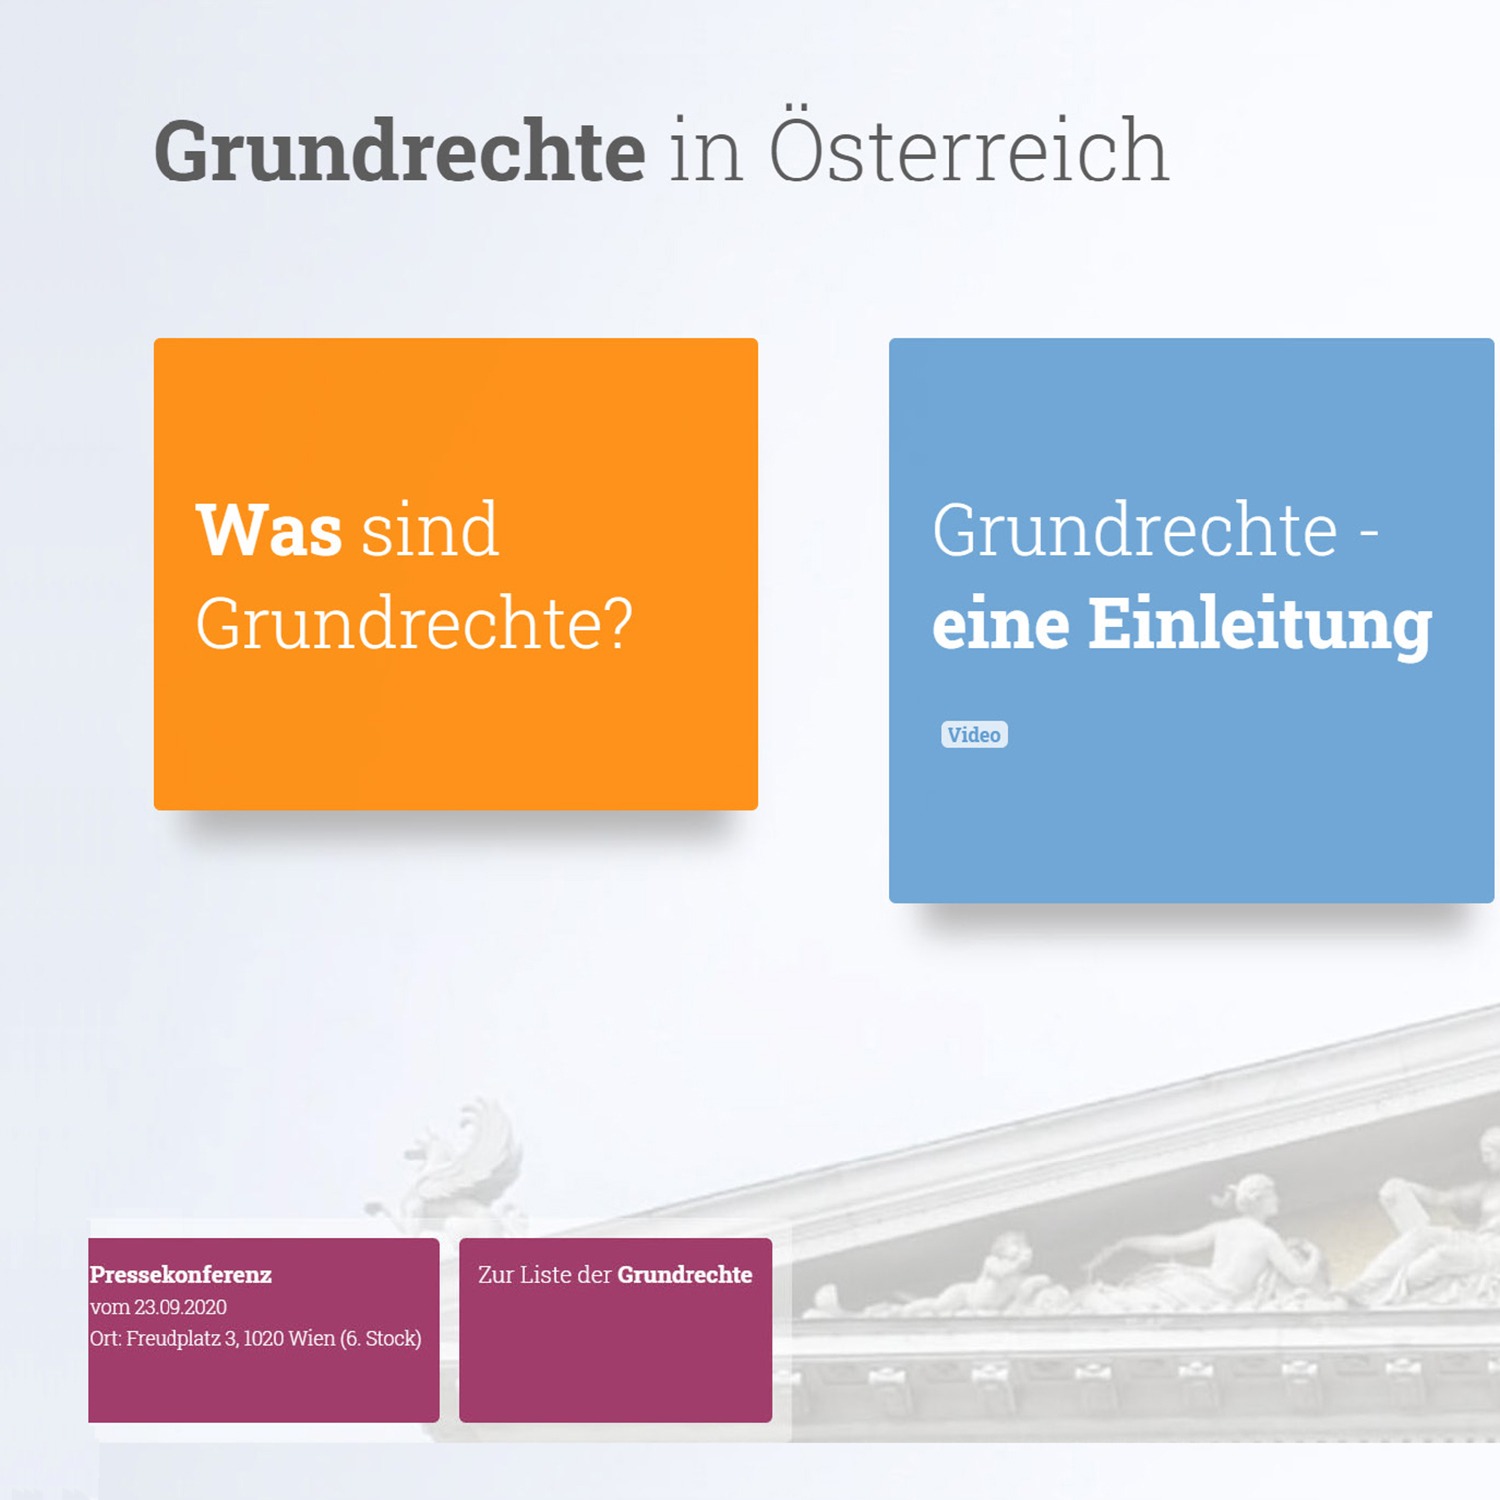 Website „Grundrechte in Österreich“ online